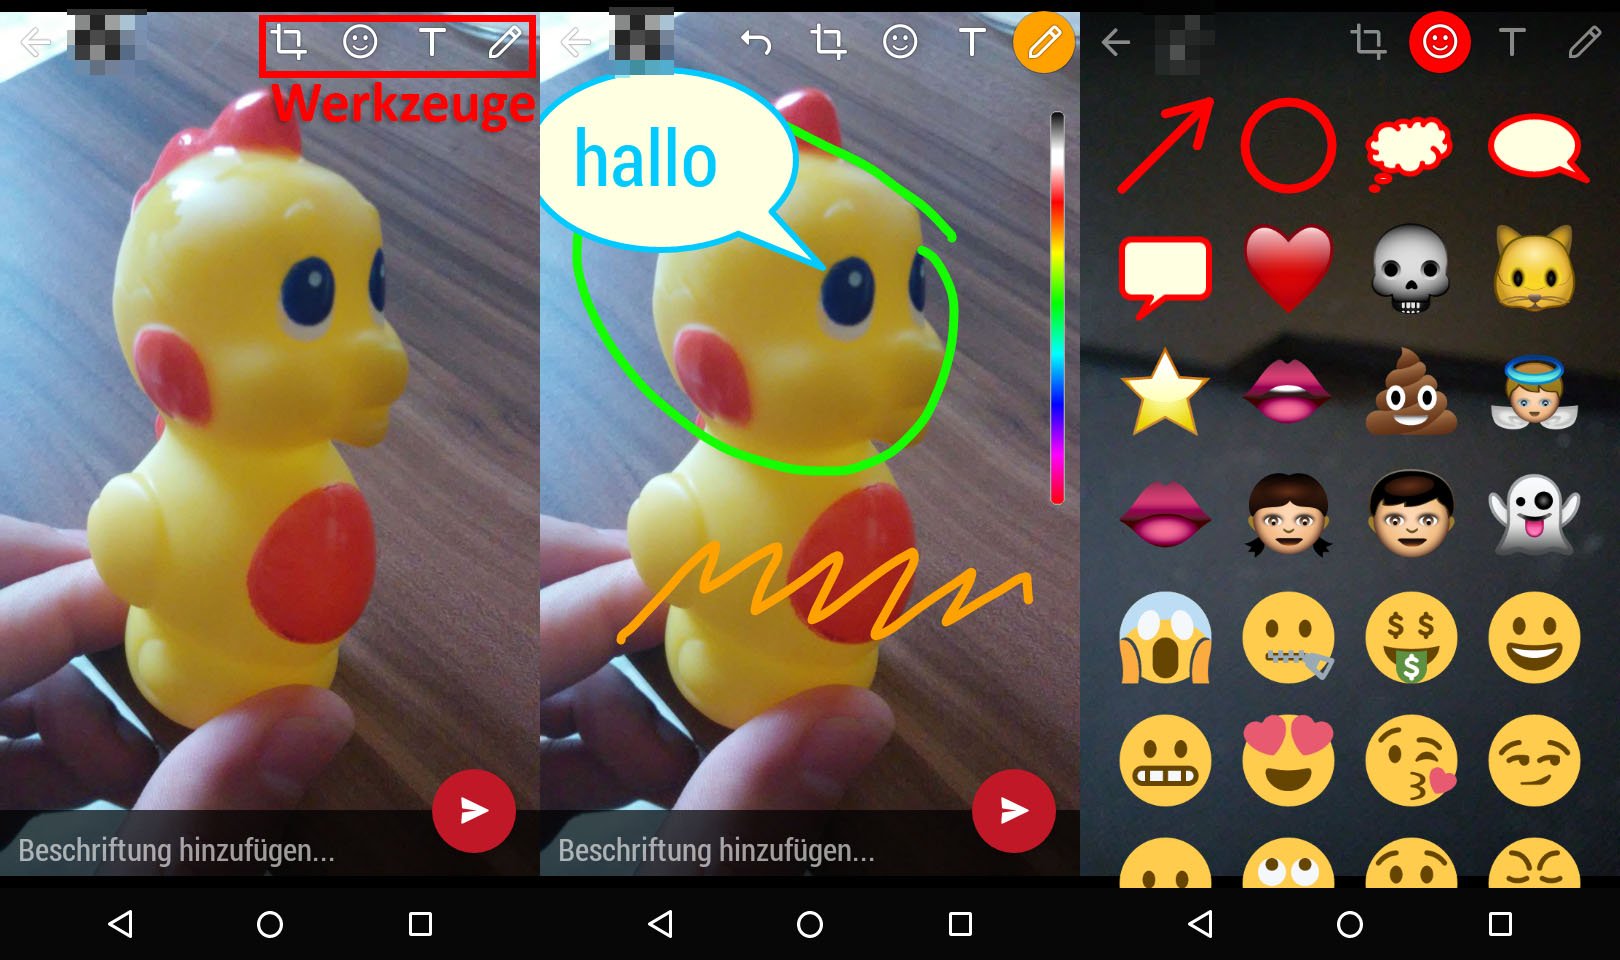 Fonkelnieuw WhatsApp: Emojis, Smiley, Text und Filter auf Fotos & Videos AB-01